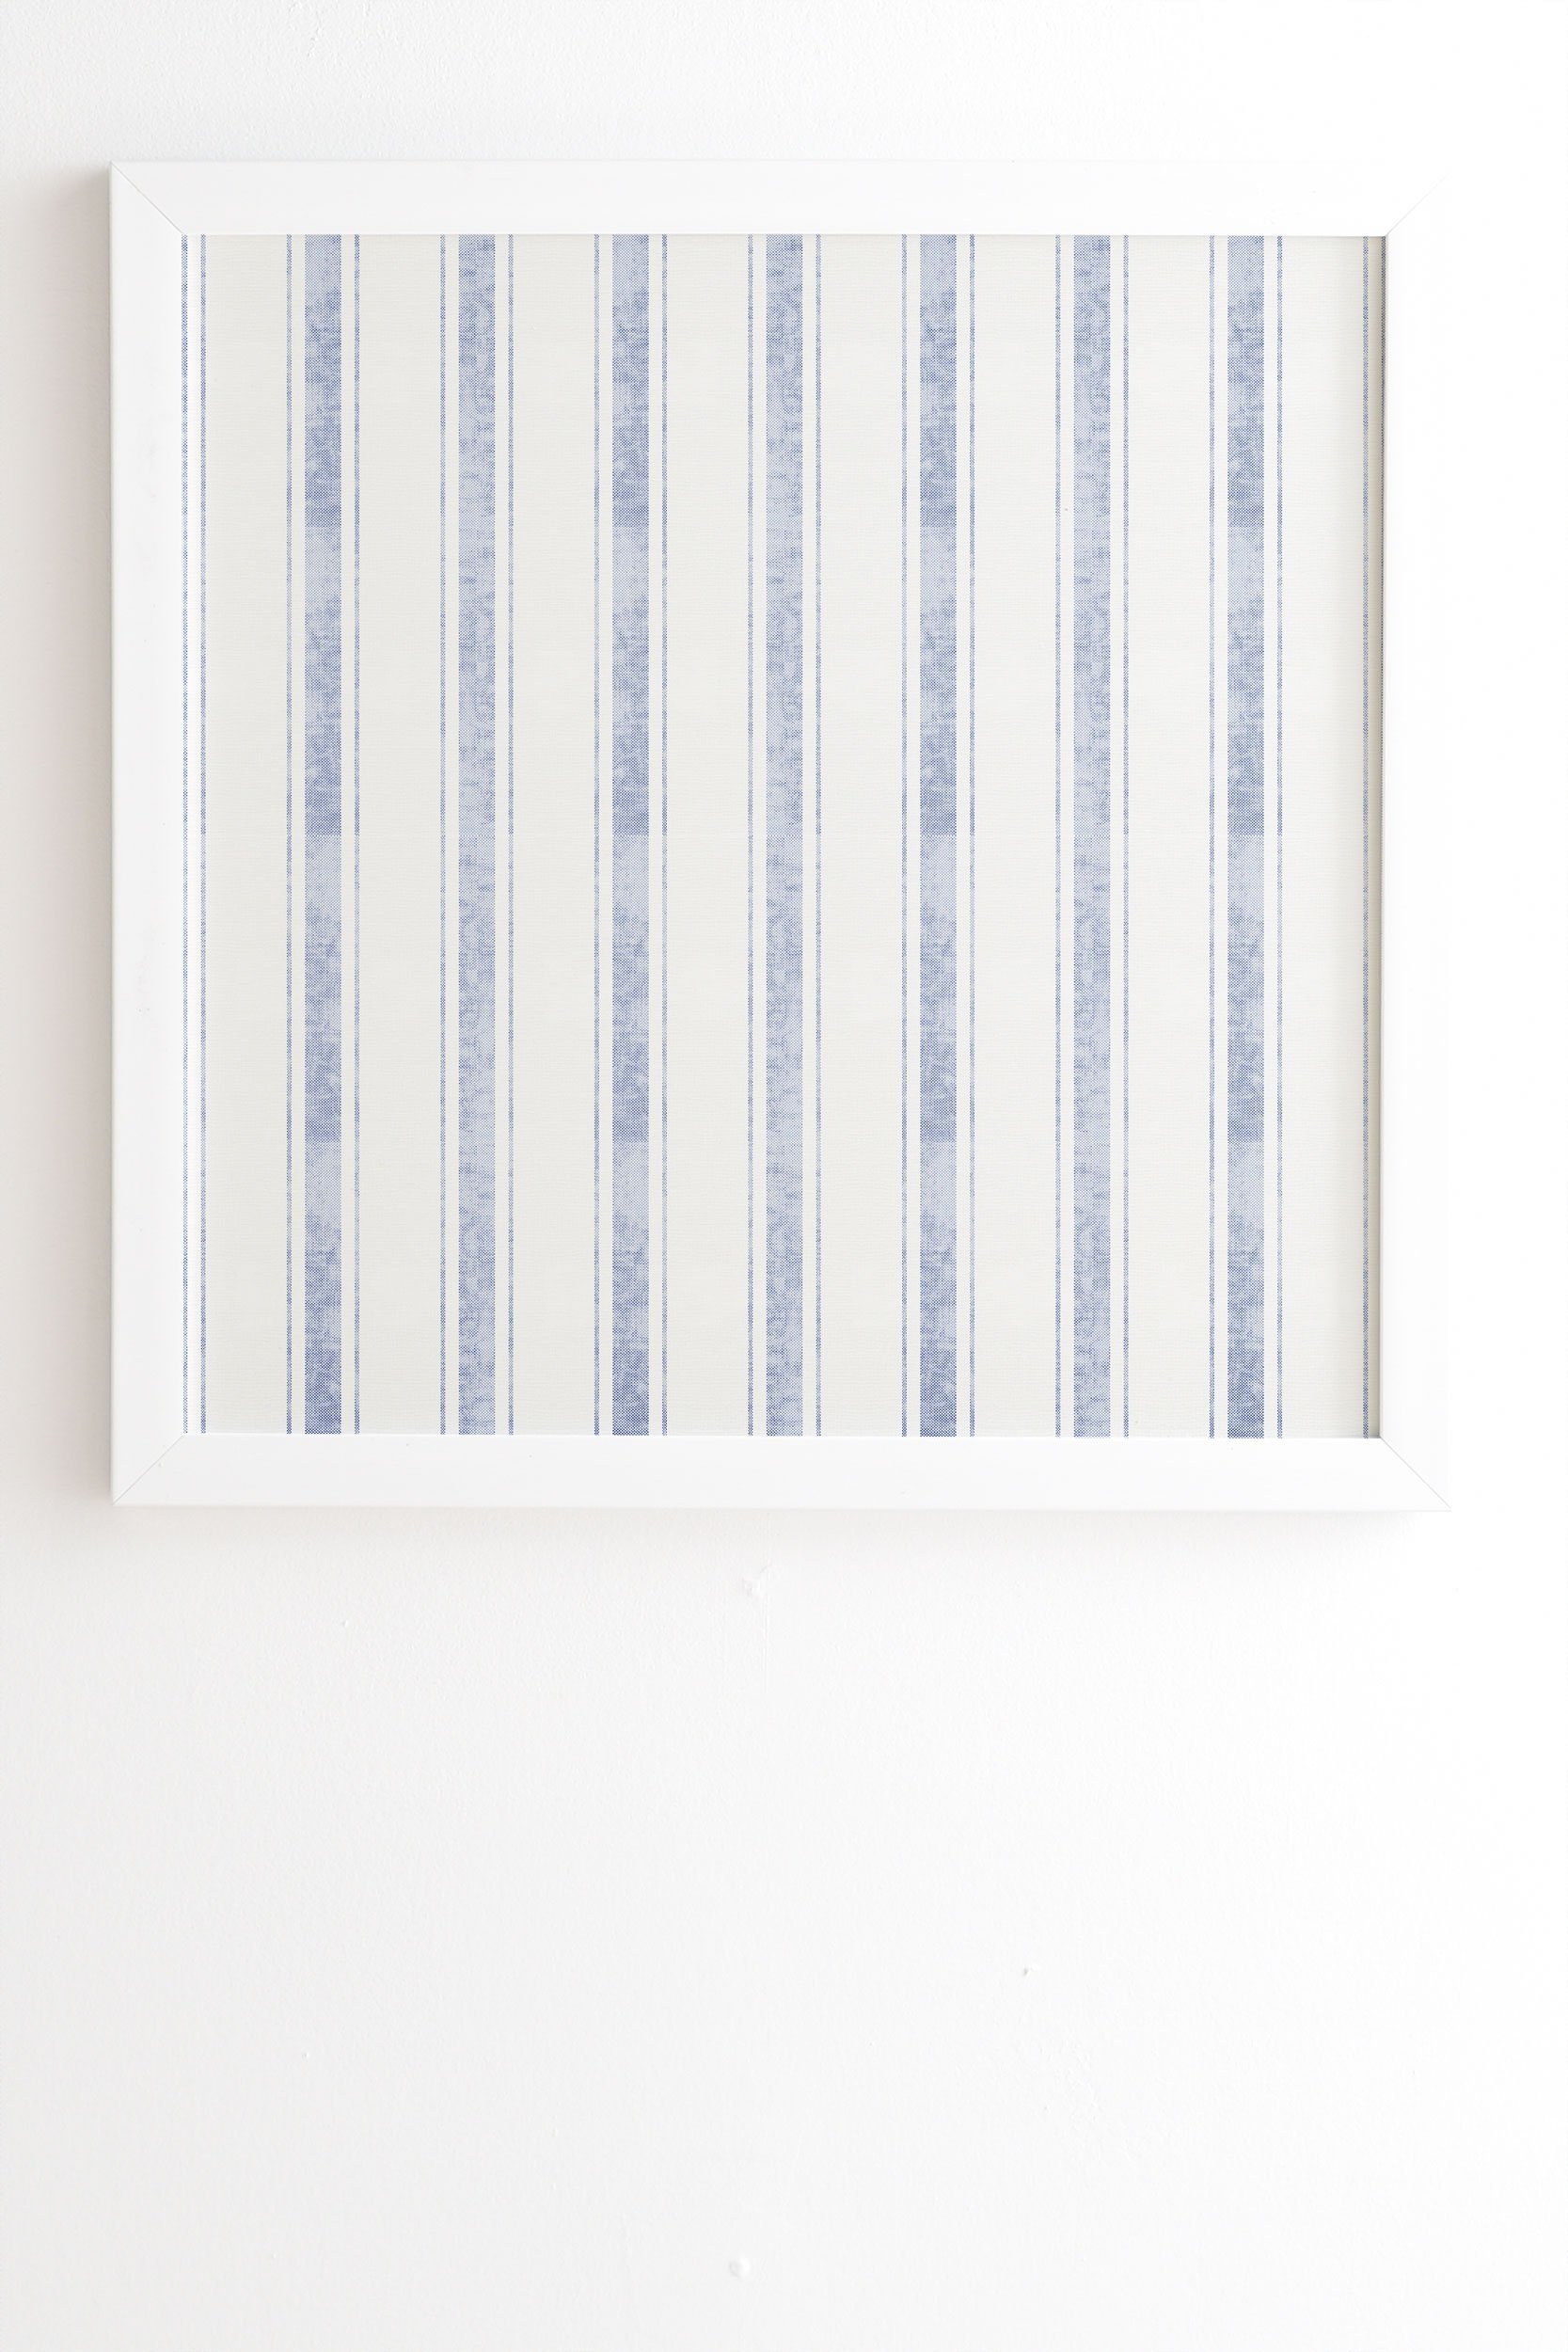 Holli Zollinger AEGEAN BOLD STRIPE White Framed Wall Art - 8" x 9.5" - Image 1